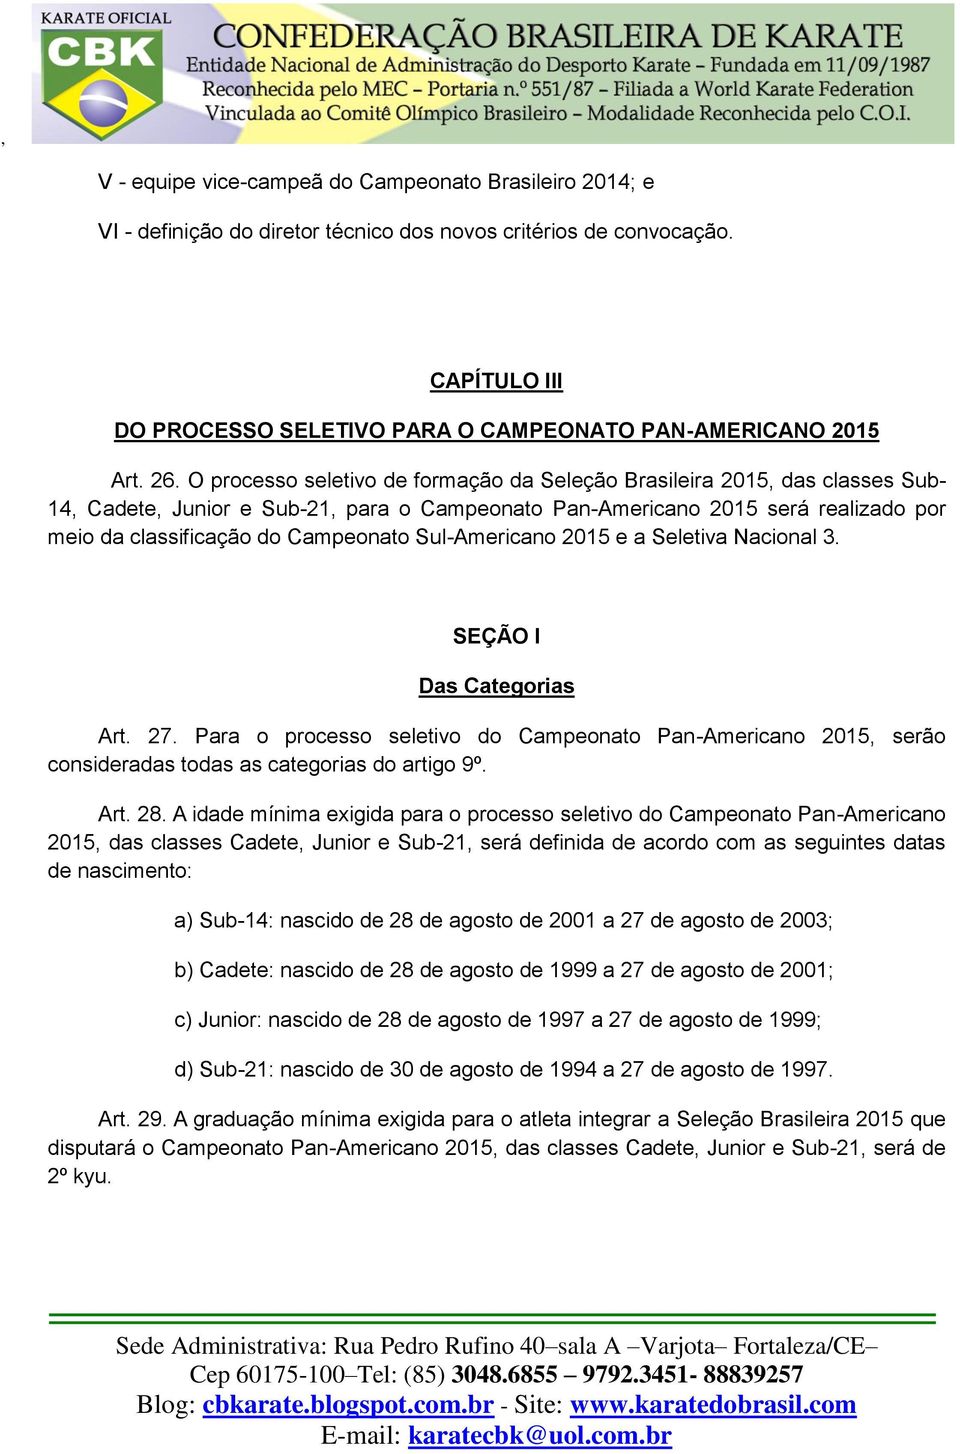 Campeonato Sul-Americano 2015 e a Seletiva Nacional 3. SEÇÃO I Das Categorias Art. 27. Para o processo seletivo do Campeonato Pan-Americano 2015, serão consideradas todas as categorias do artigo 9º.